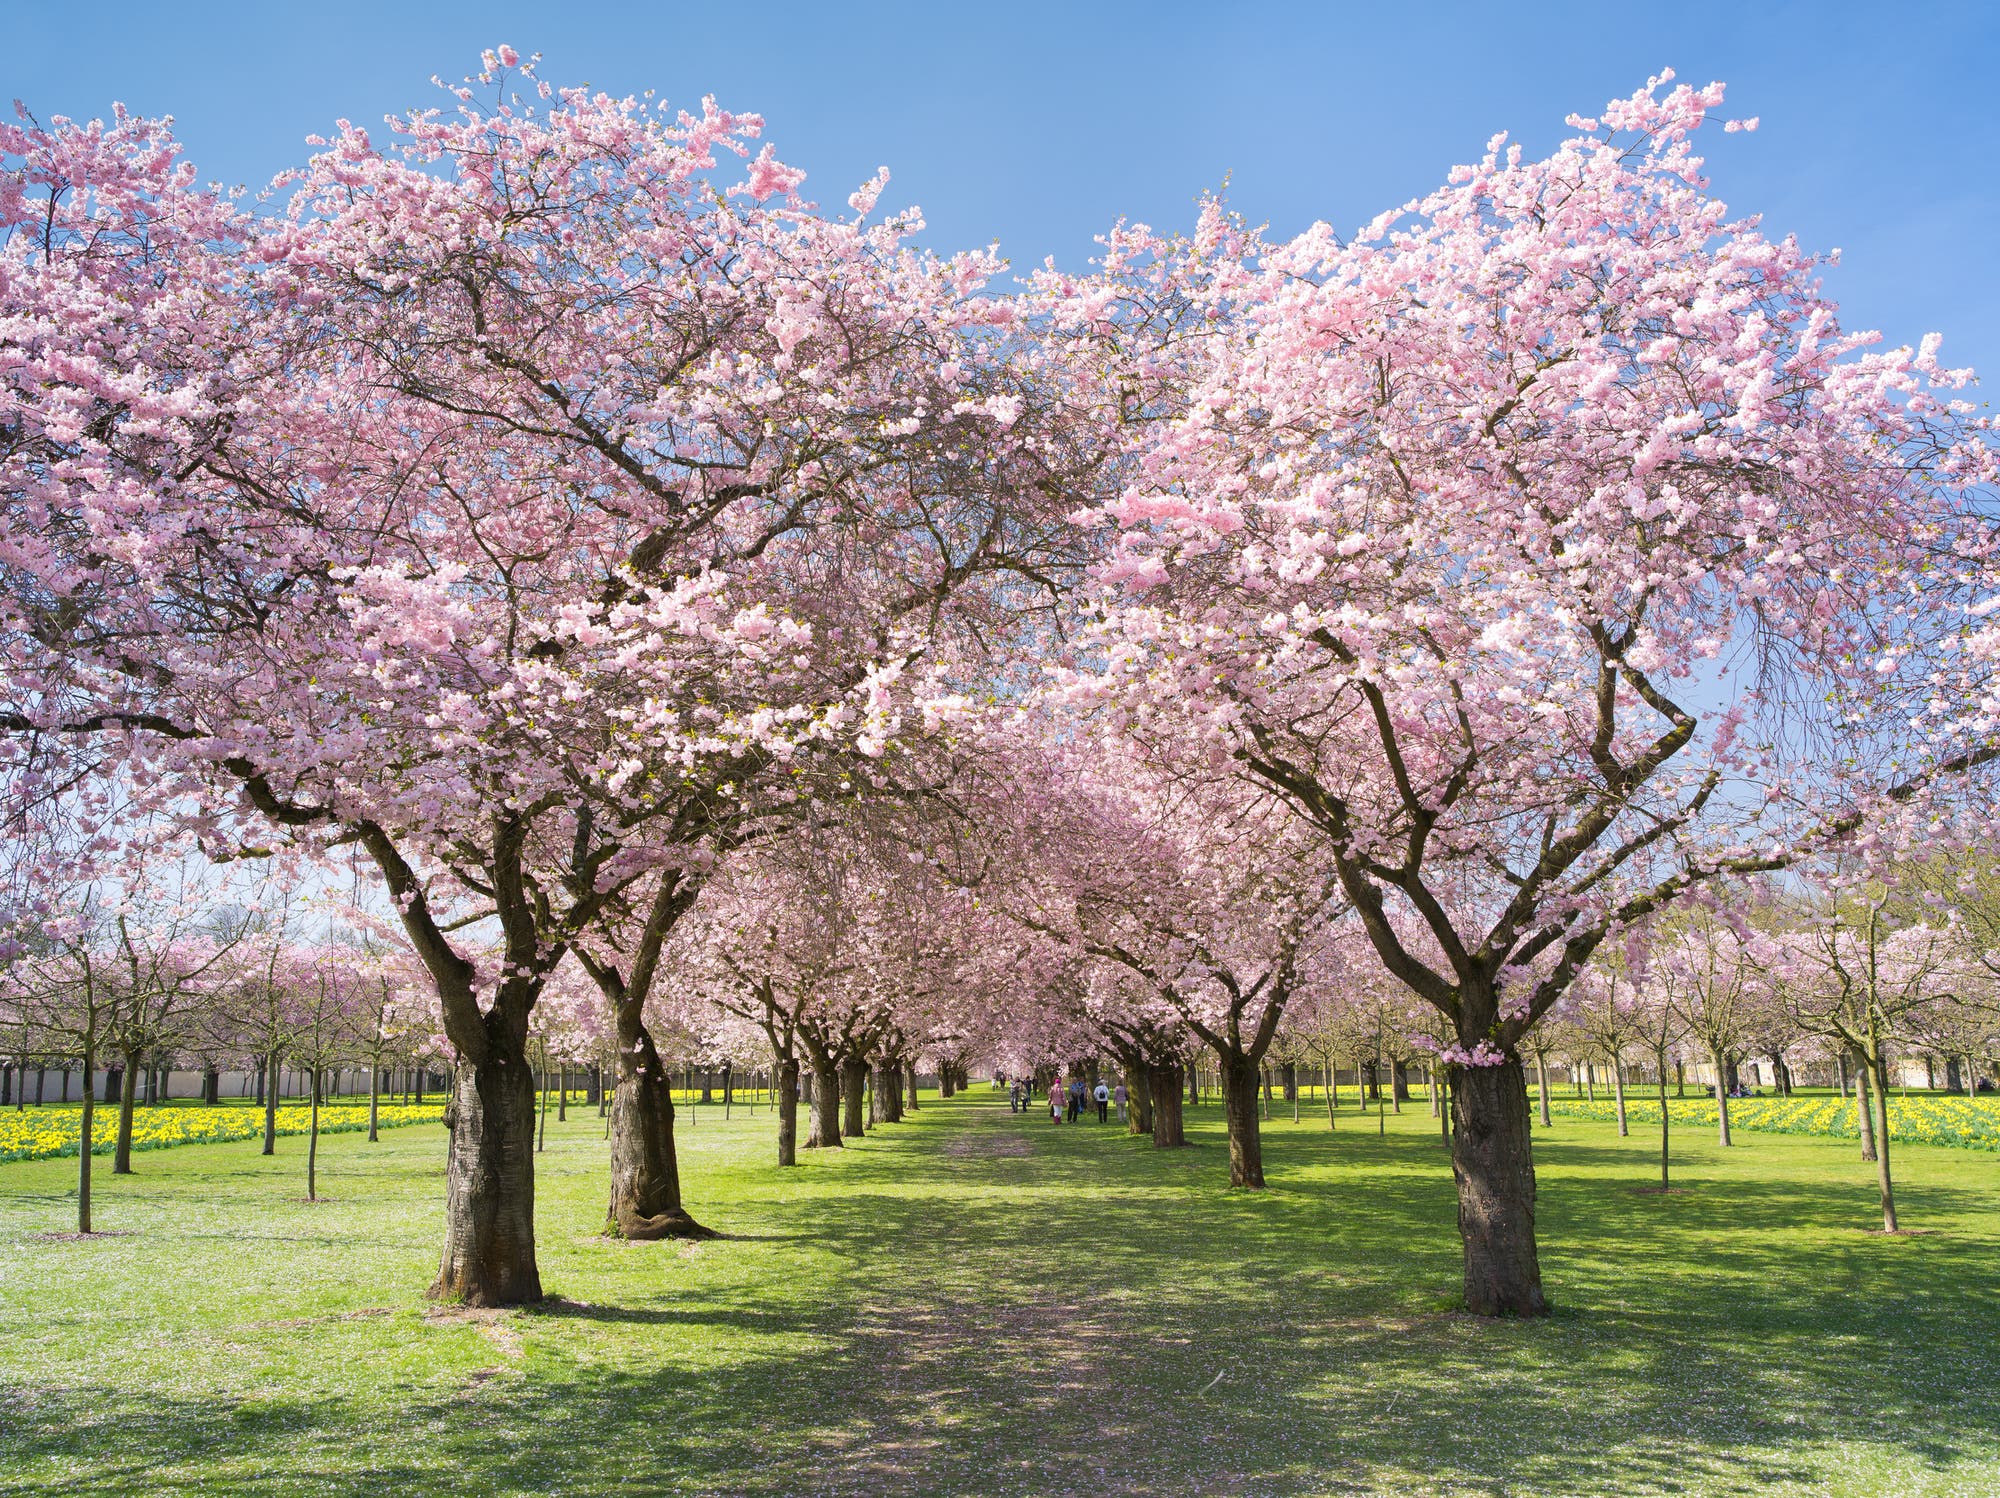 Mandelblüte in einem Park